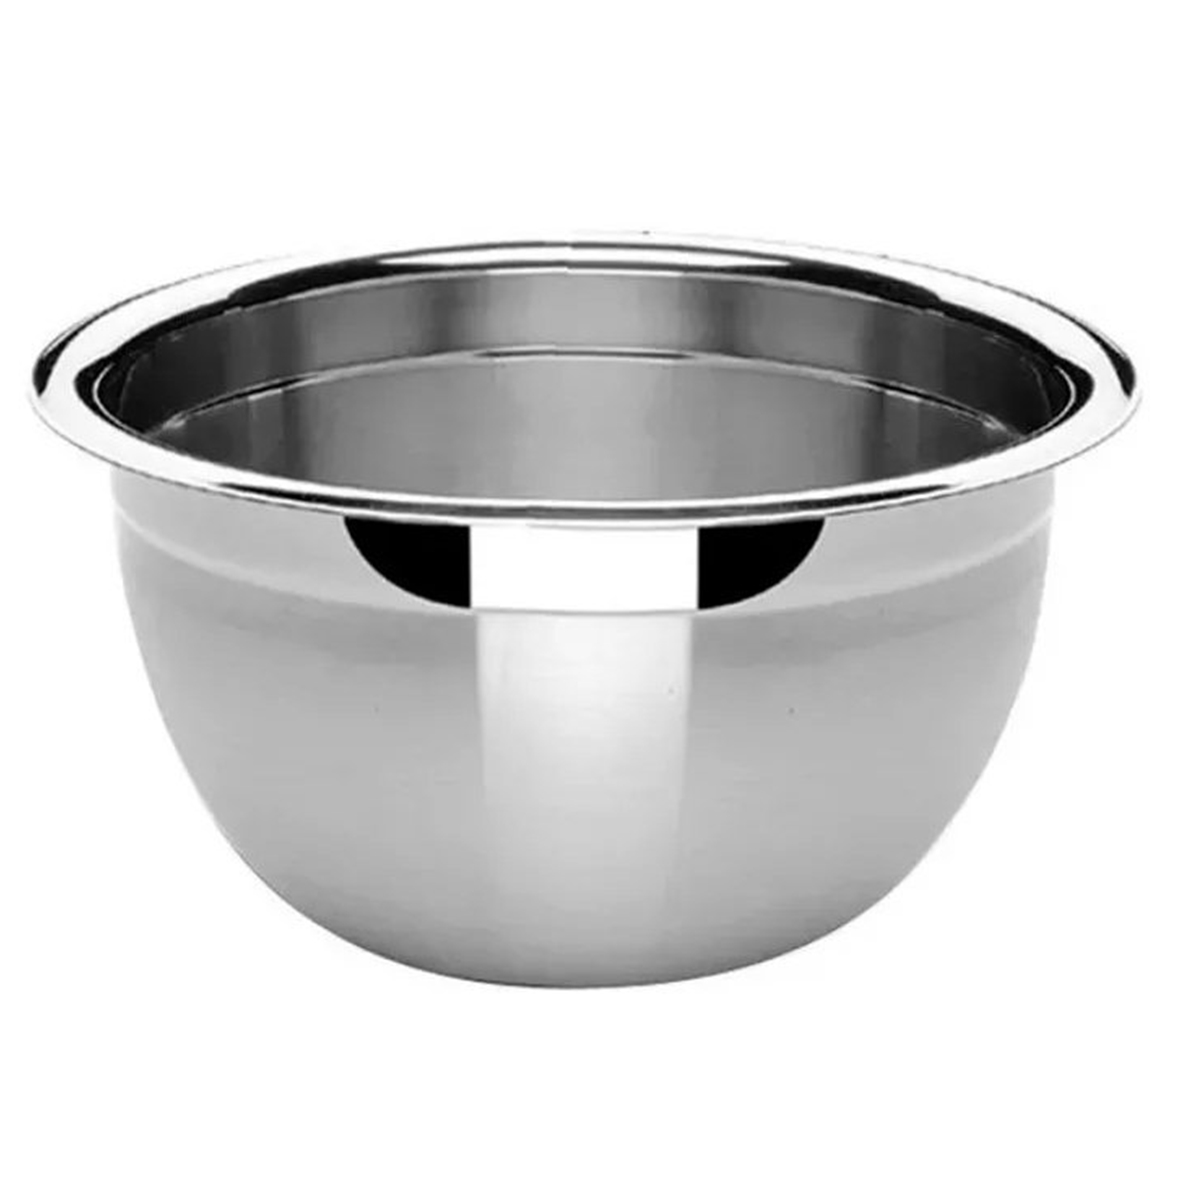 3 Tigelas Bowl Em Aço Inox 30 Cm Pratica e Durável Facilite.ud MX-3028-3